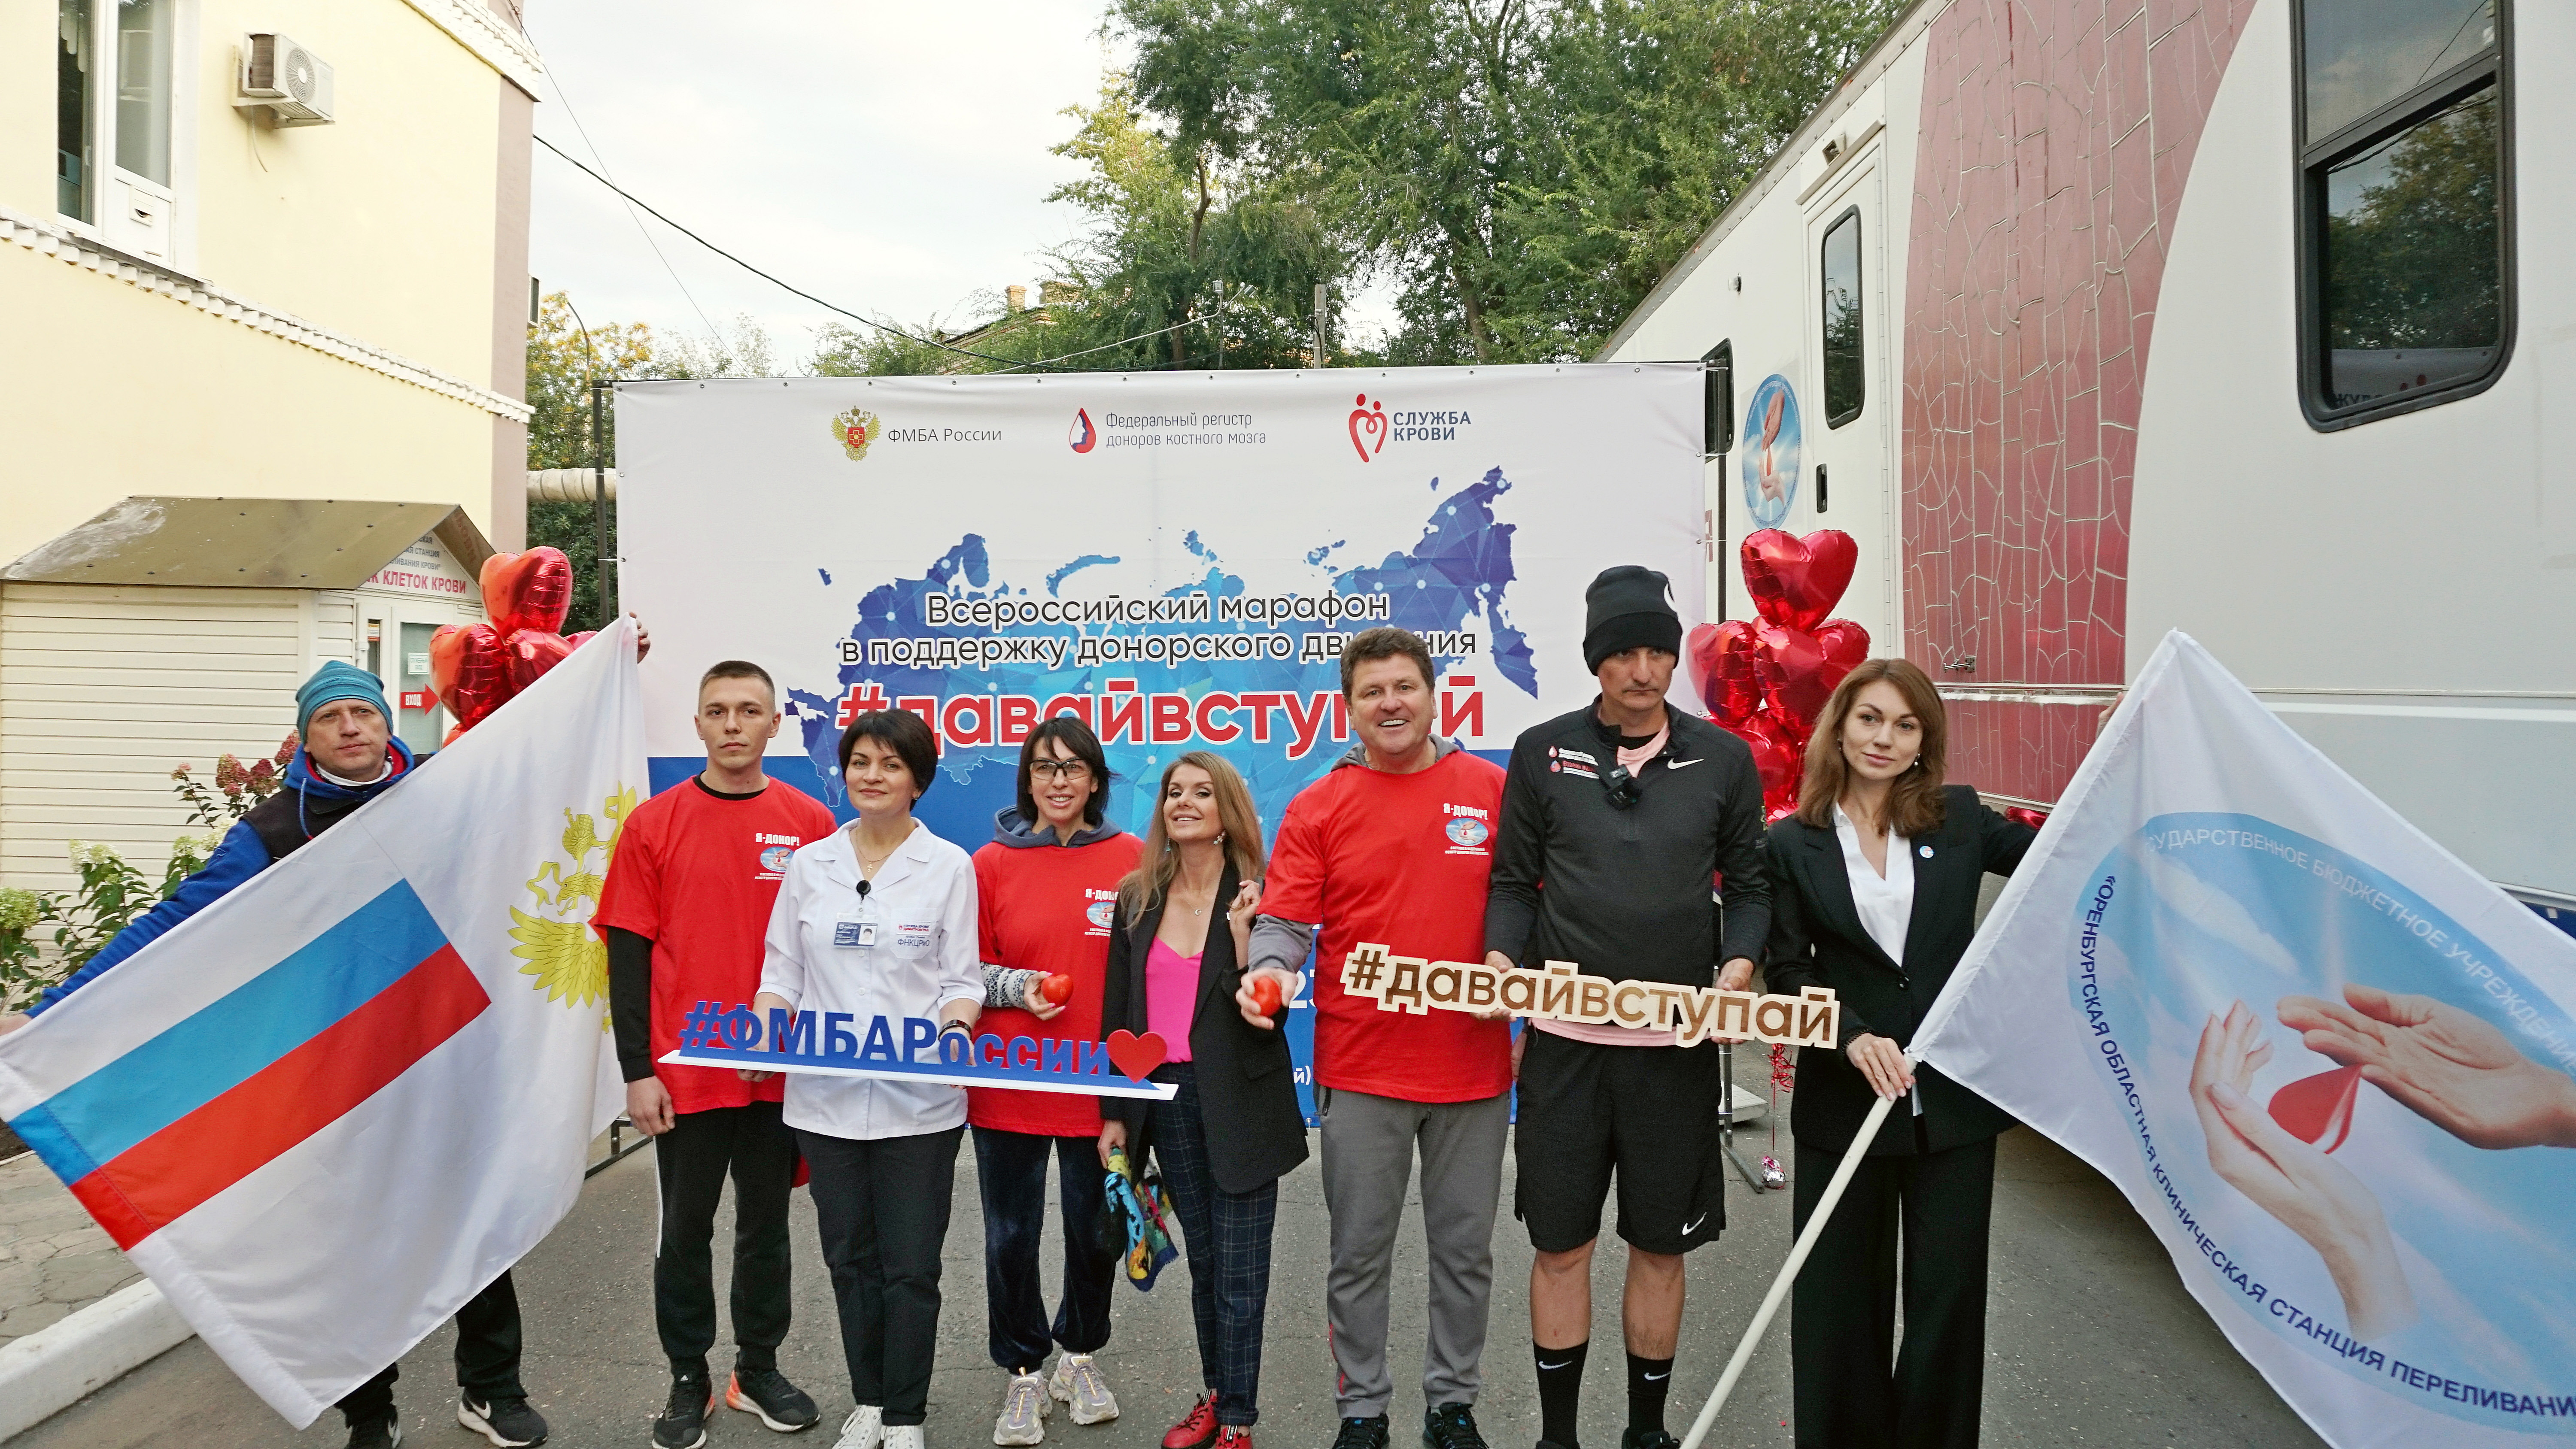 Всероссийский марафон донорства костного мозга #ДавайВступай!